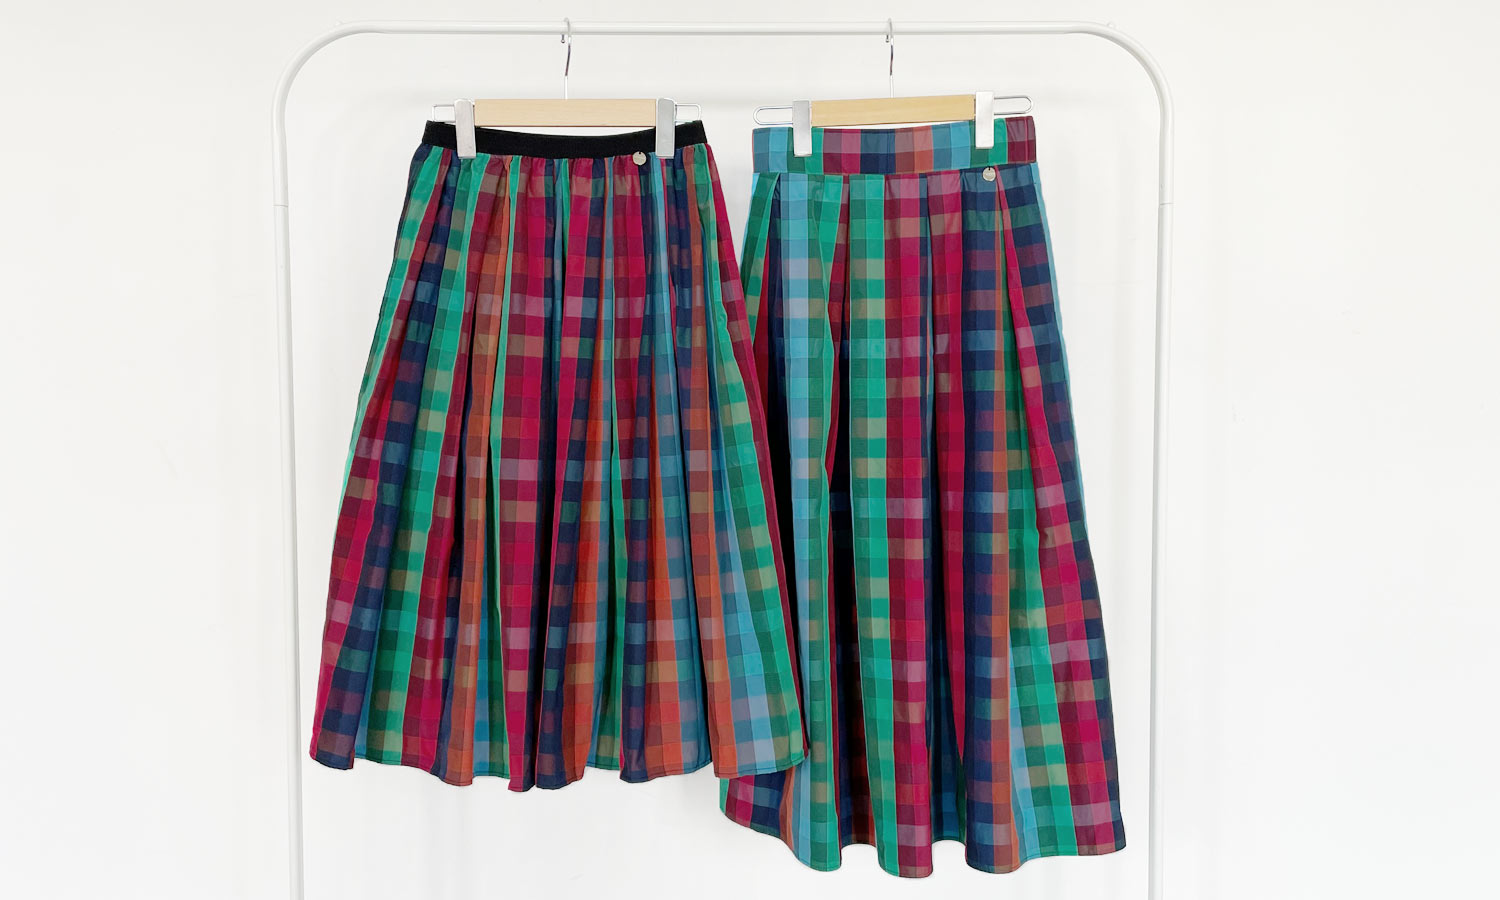 トレコード人気定番商品の神戸・山の手スカートタイプかバックファスナータイプかのどちらかお好きな方のスカートをお選び頂けるマルチチェック柄スカート